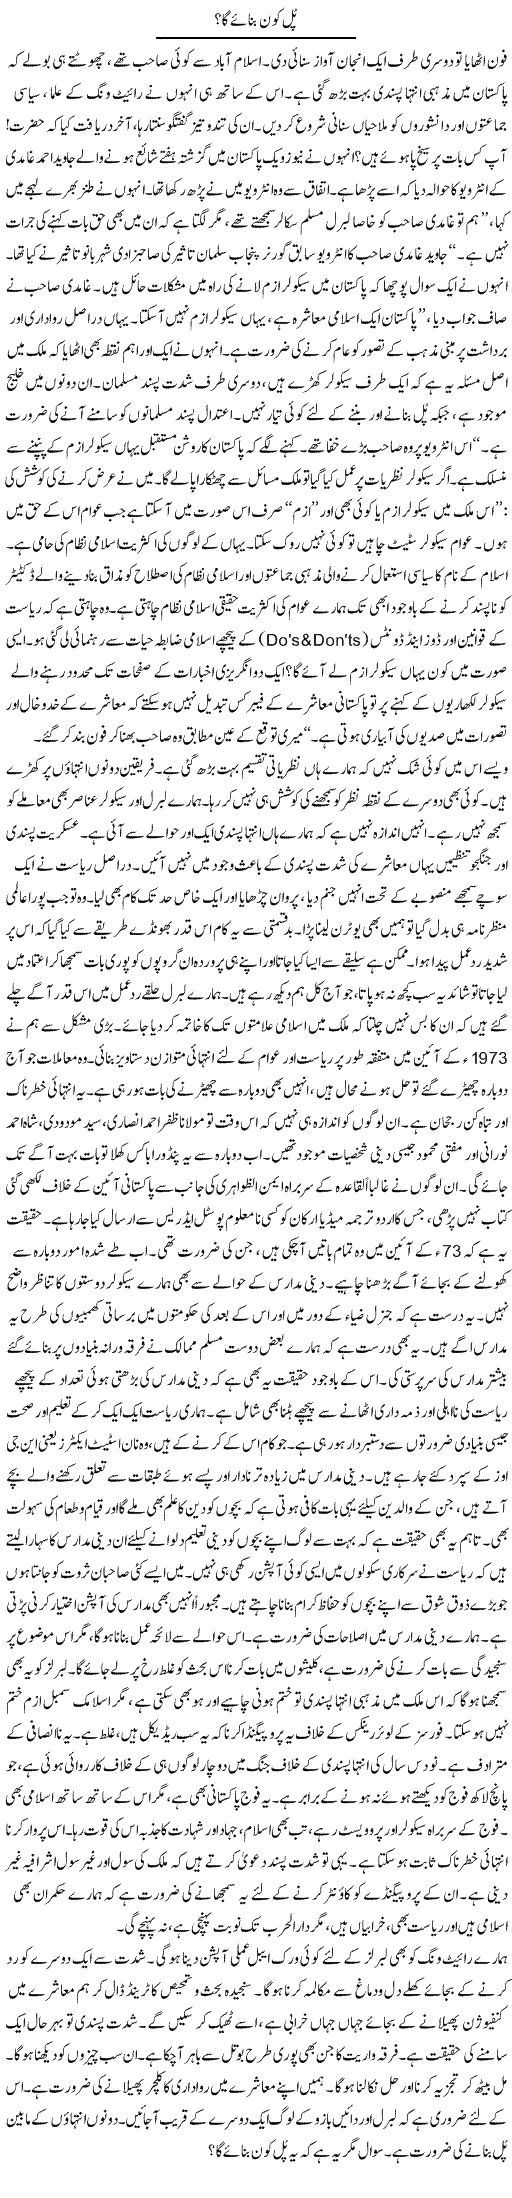 Pakistan and Secularism Express Column Amir Khakwani 20 June 2011